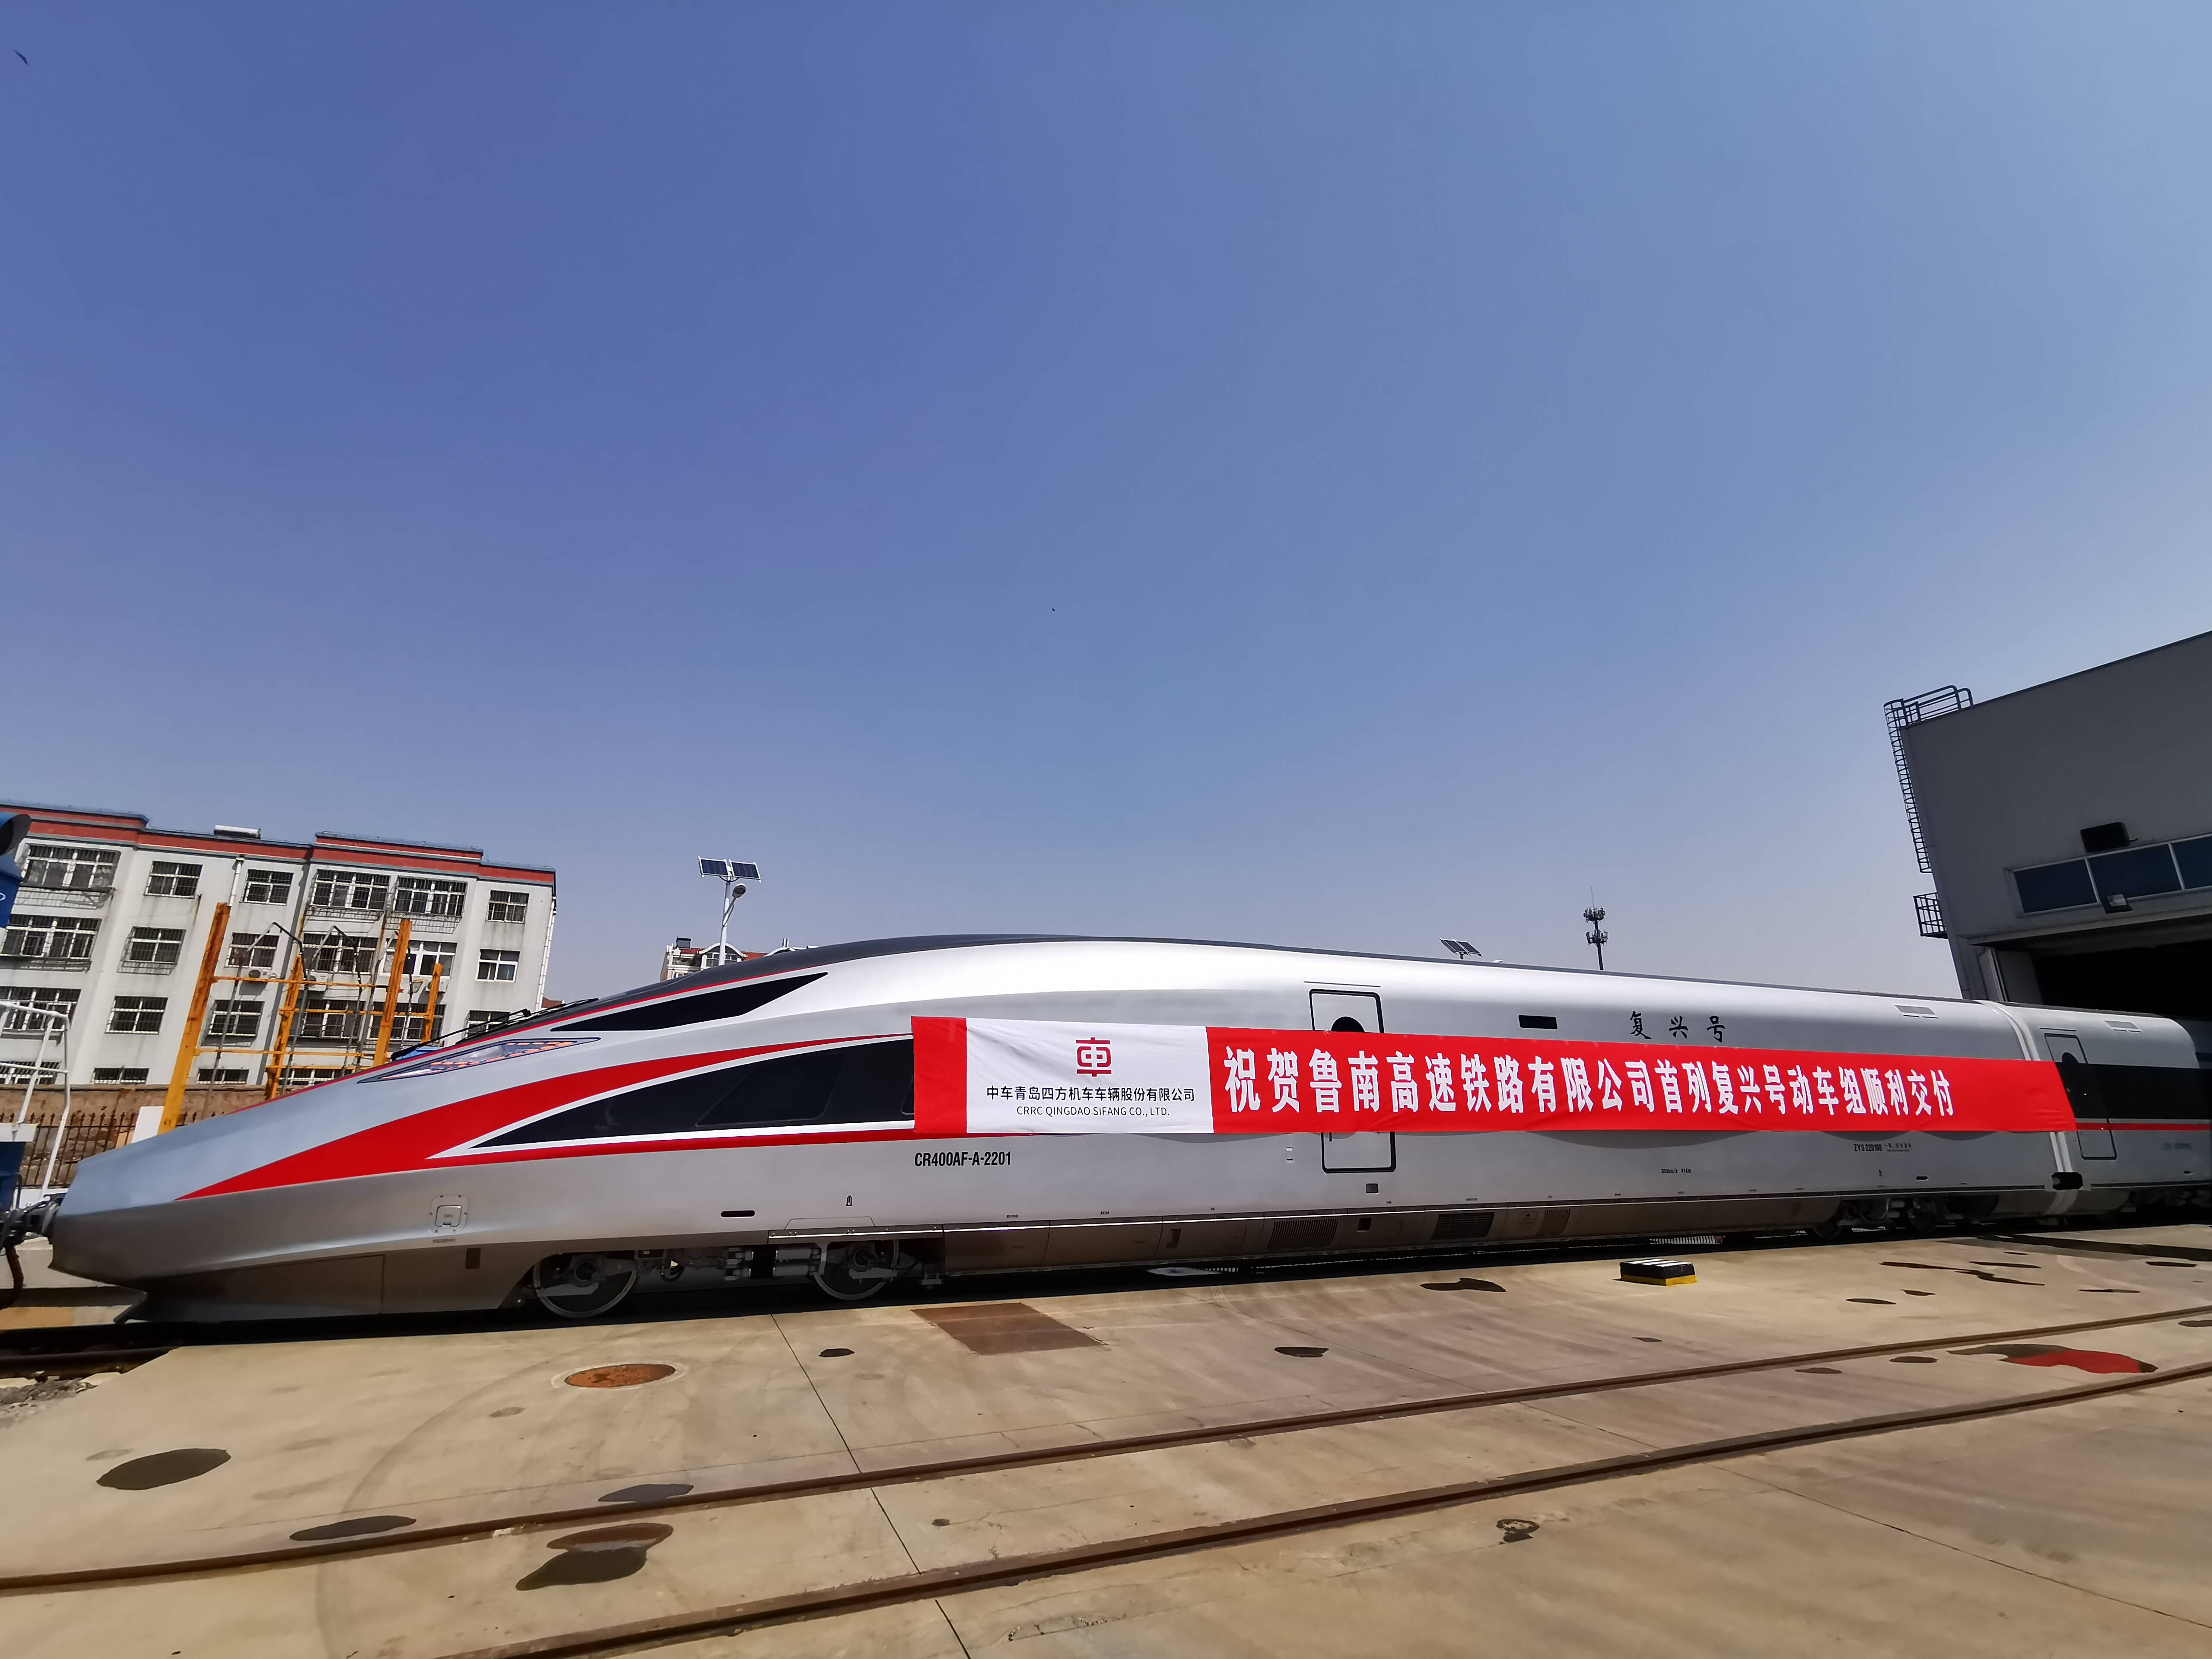 鲁南高铁公司自主采购的新版复兴号动车组正式投入运营